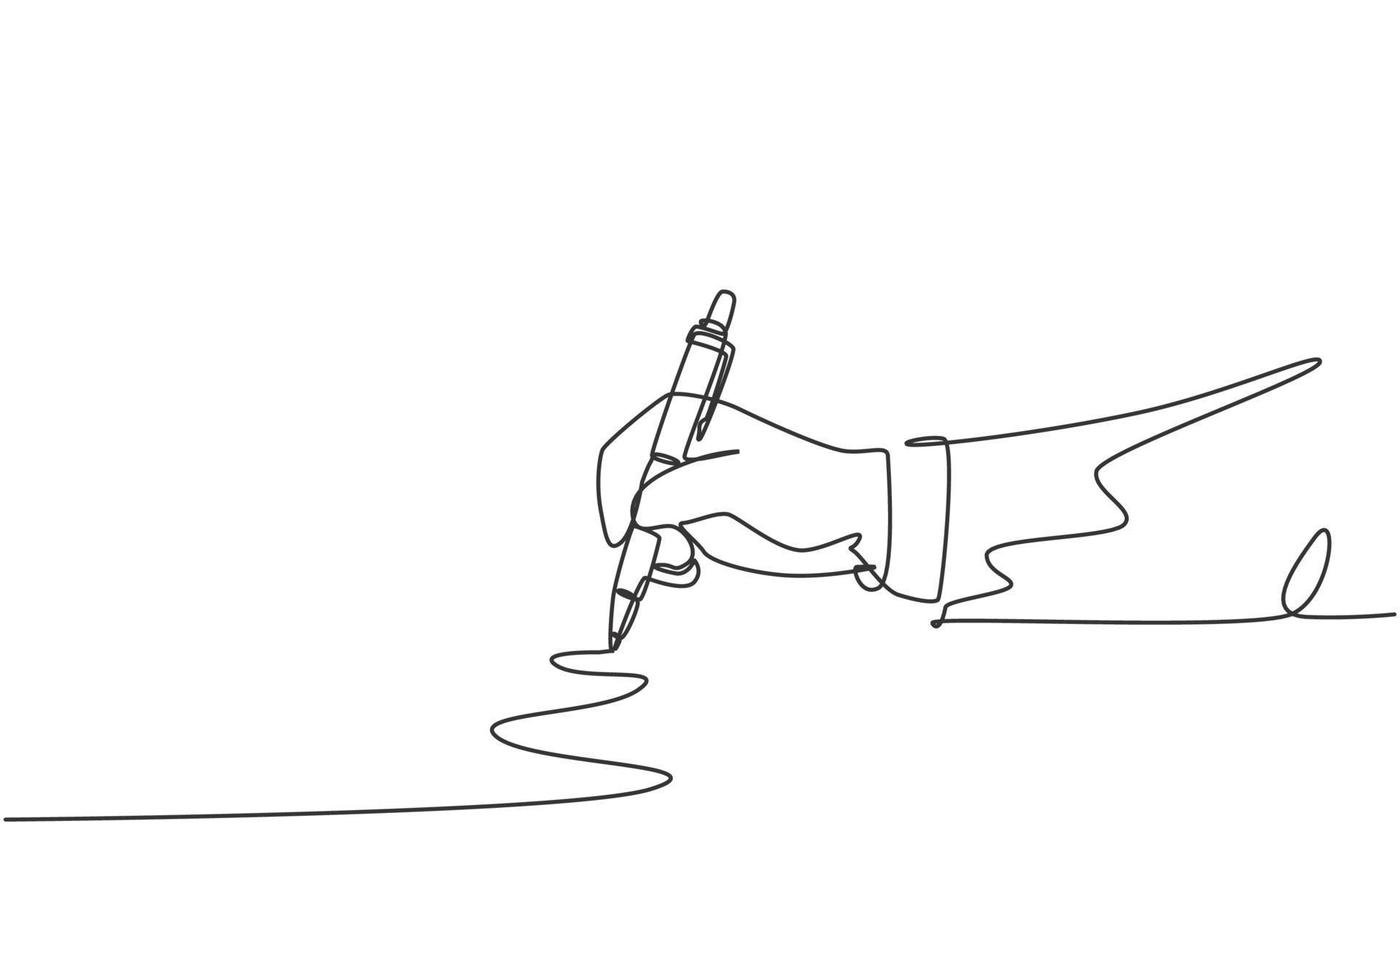 disegno a linea continua singola del gesto della mano disegnato linea retta a zig zag. scrivere una lunga striscia a zigzag con la penna sul concetto di blocco note. illustrazione grafica vettoriale moderna di disegno di una linea di disegno